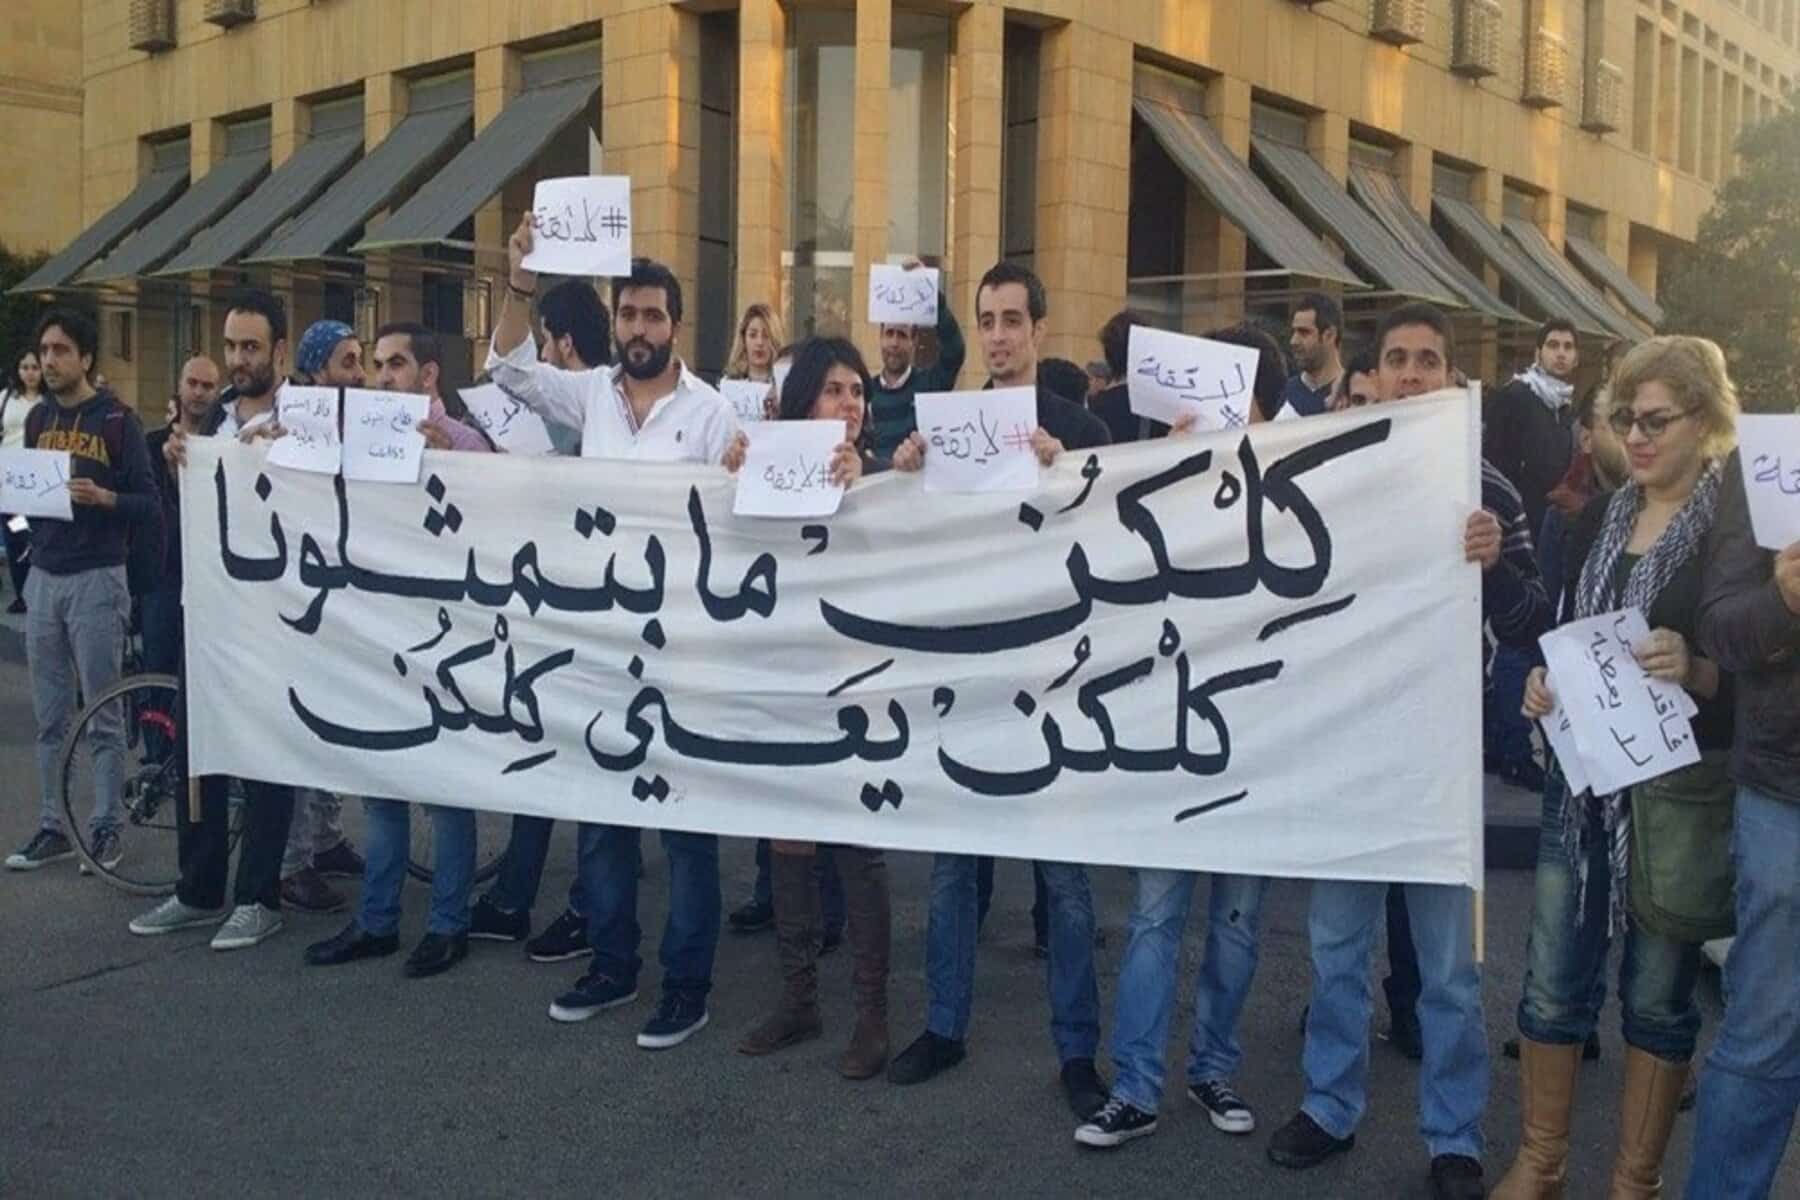 احتجاجات في لبنان alarabtrend.com